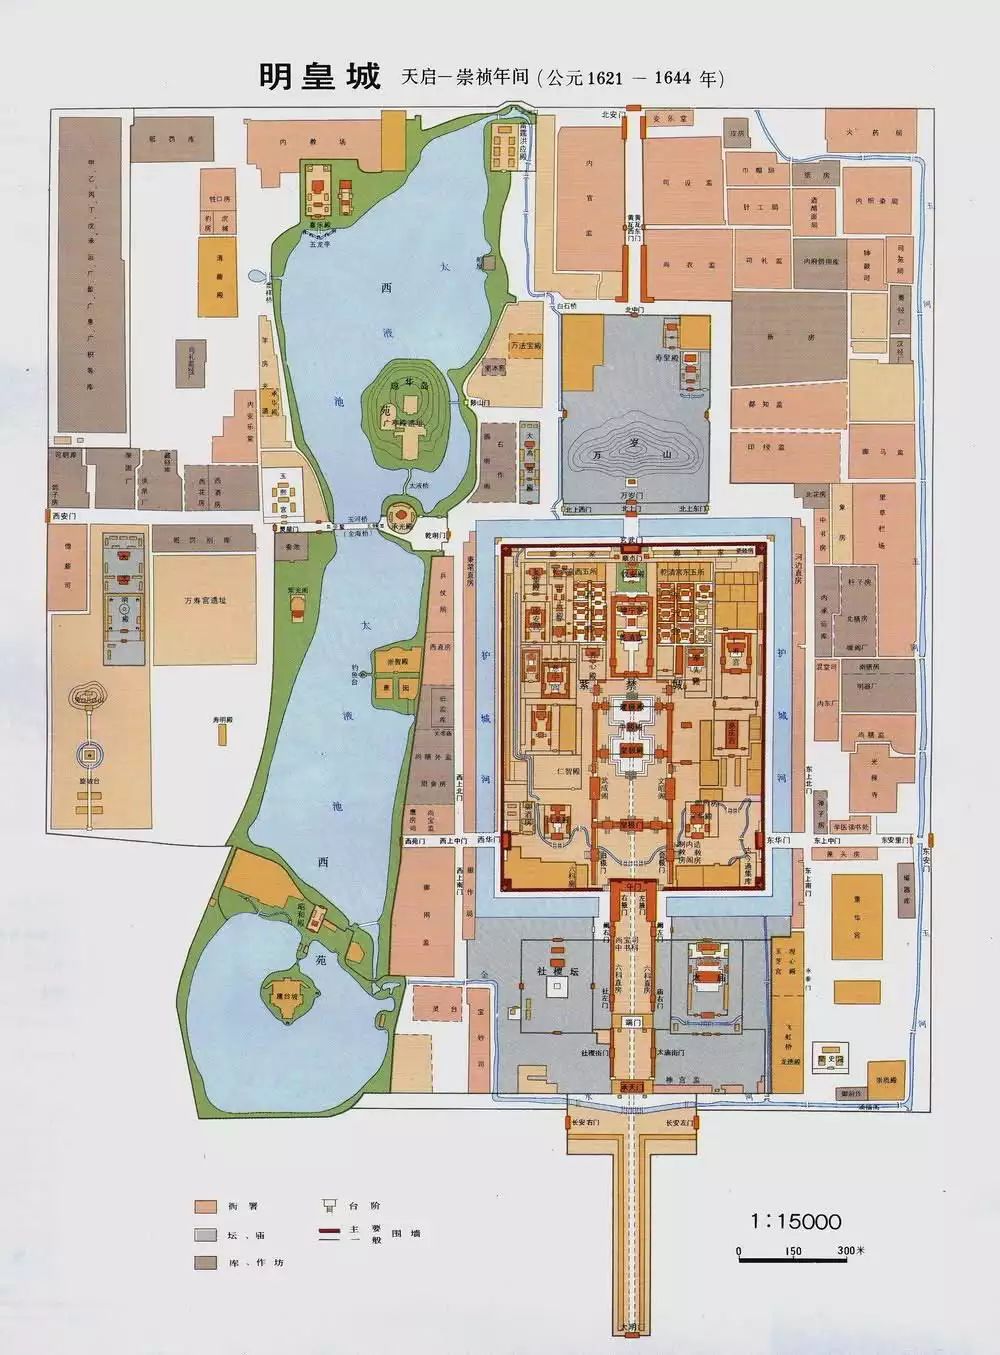 明代皇城平面图正统十三年(1448年)二月,太监王振称这座寺院已凋敝不